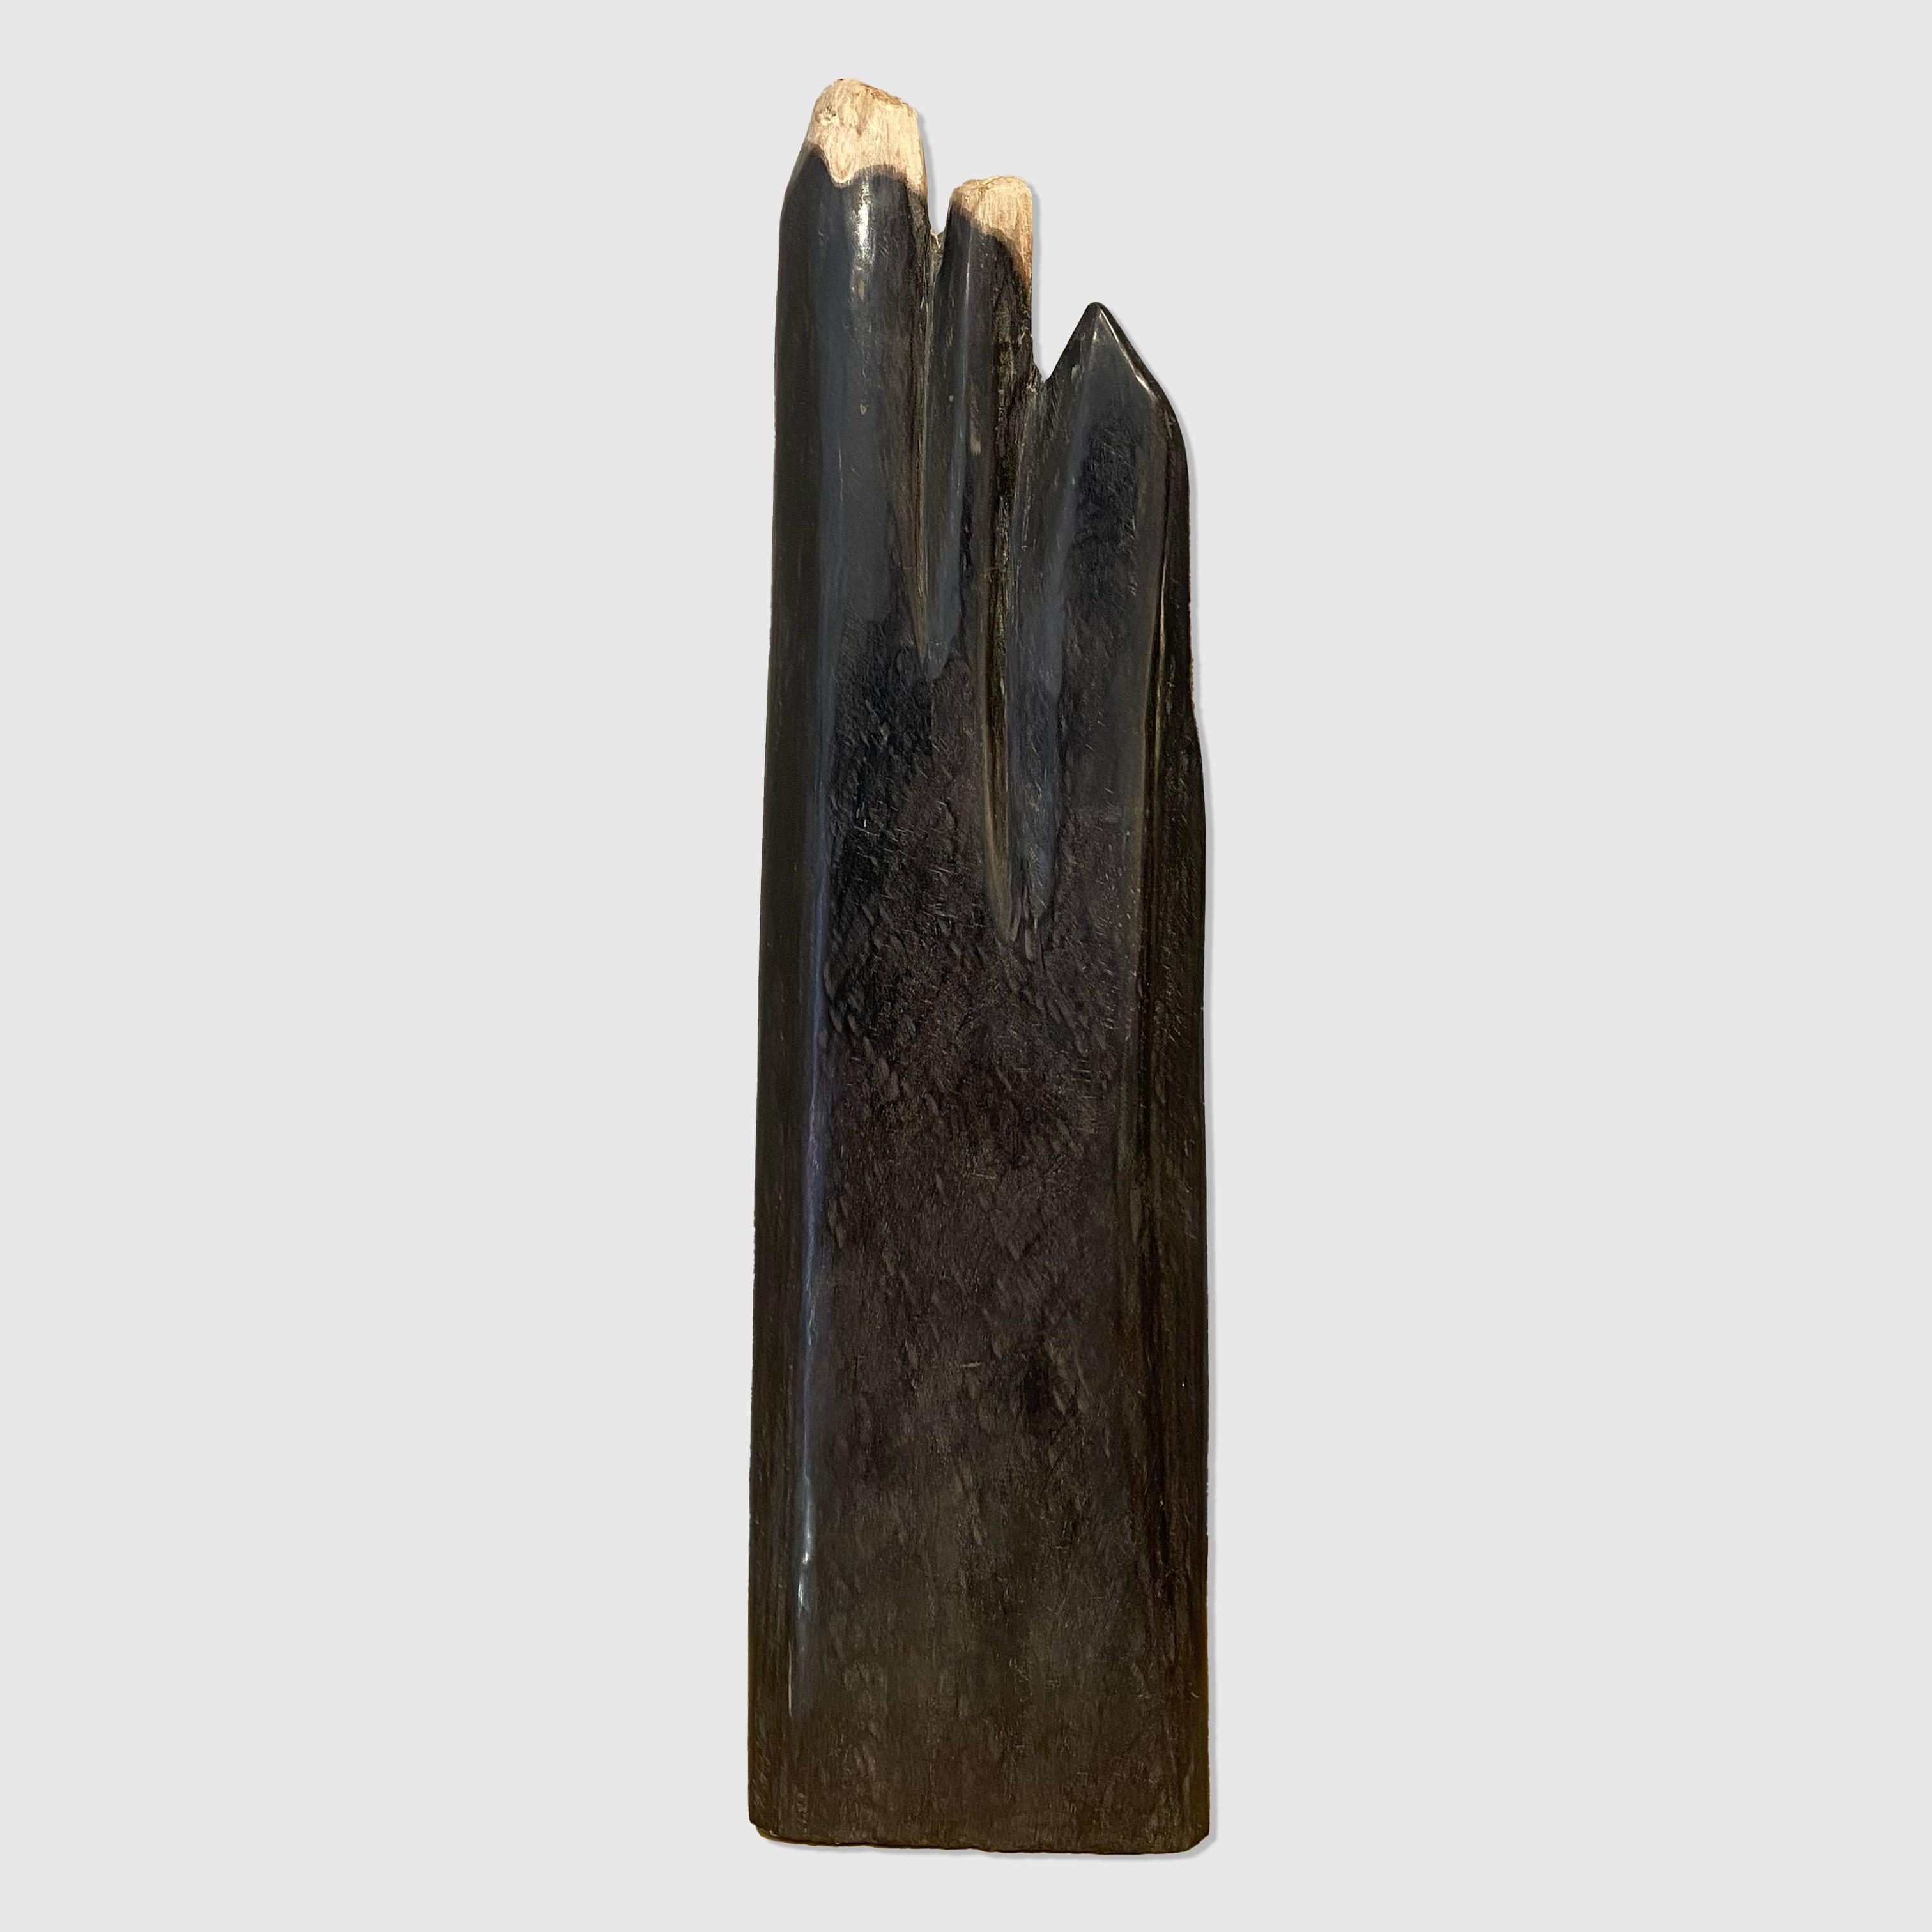 Fossilised wood
150 million years old
48 x 13 x 6 cm
Indonesia
£250

